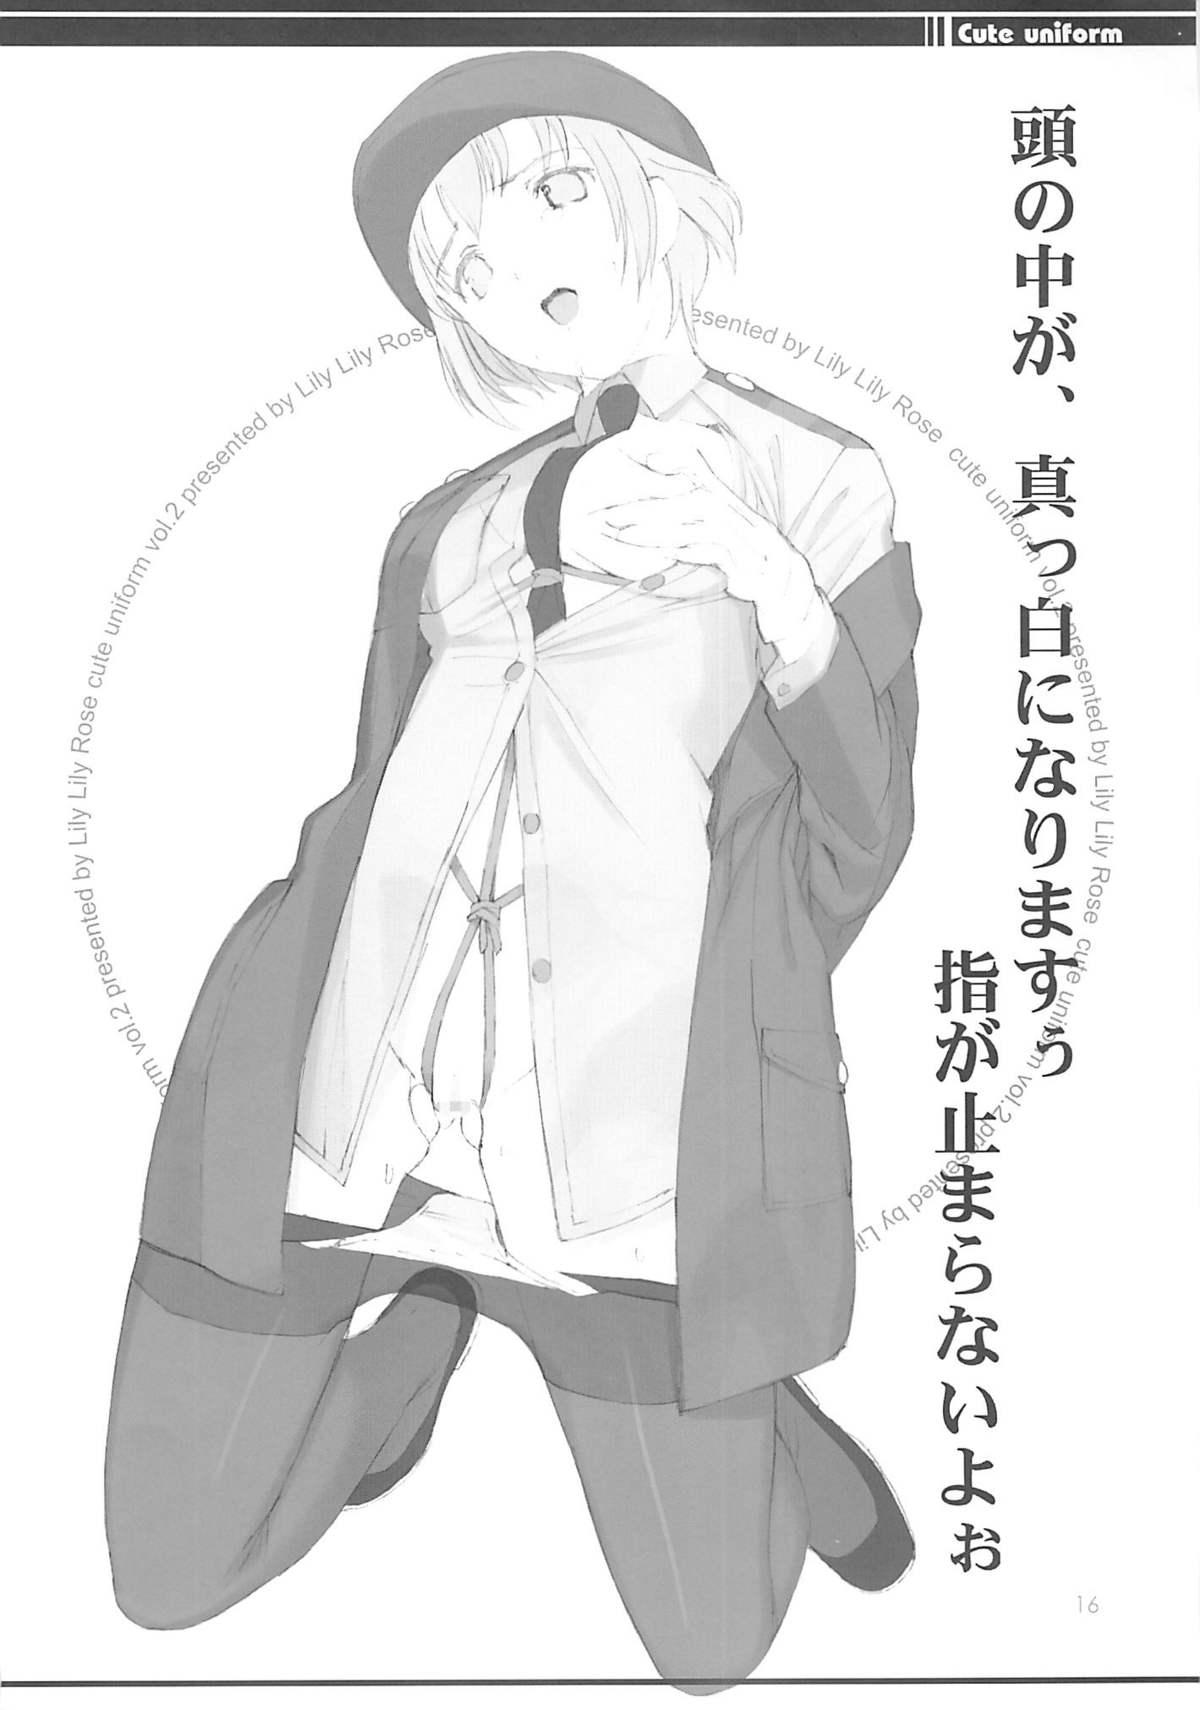 cute uniform vol. 02 14